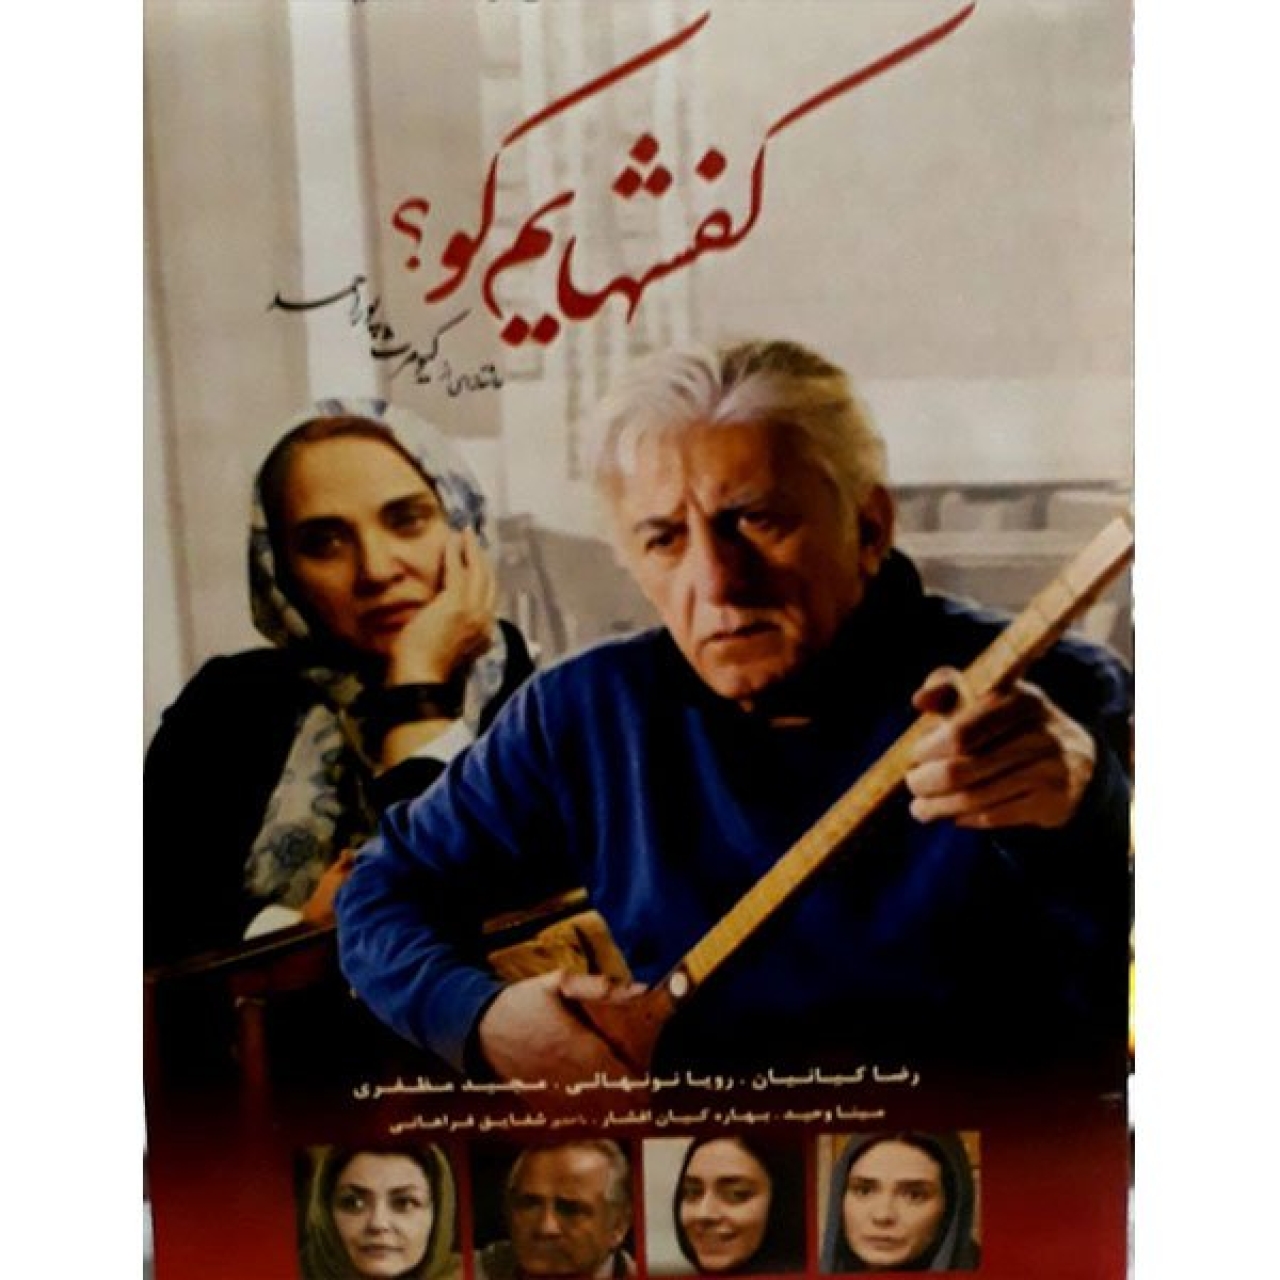 فیلم سینمایی کفشهایم کو اثر علی قایم مقامی